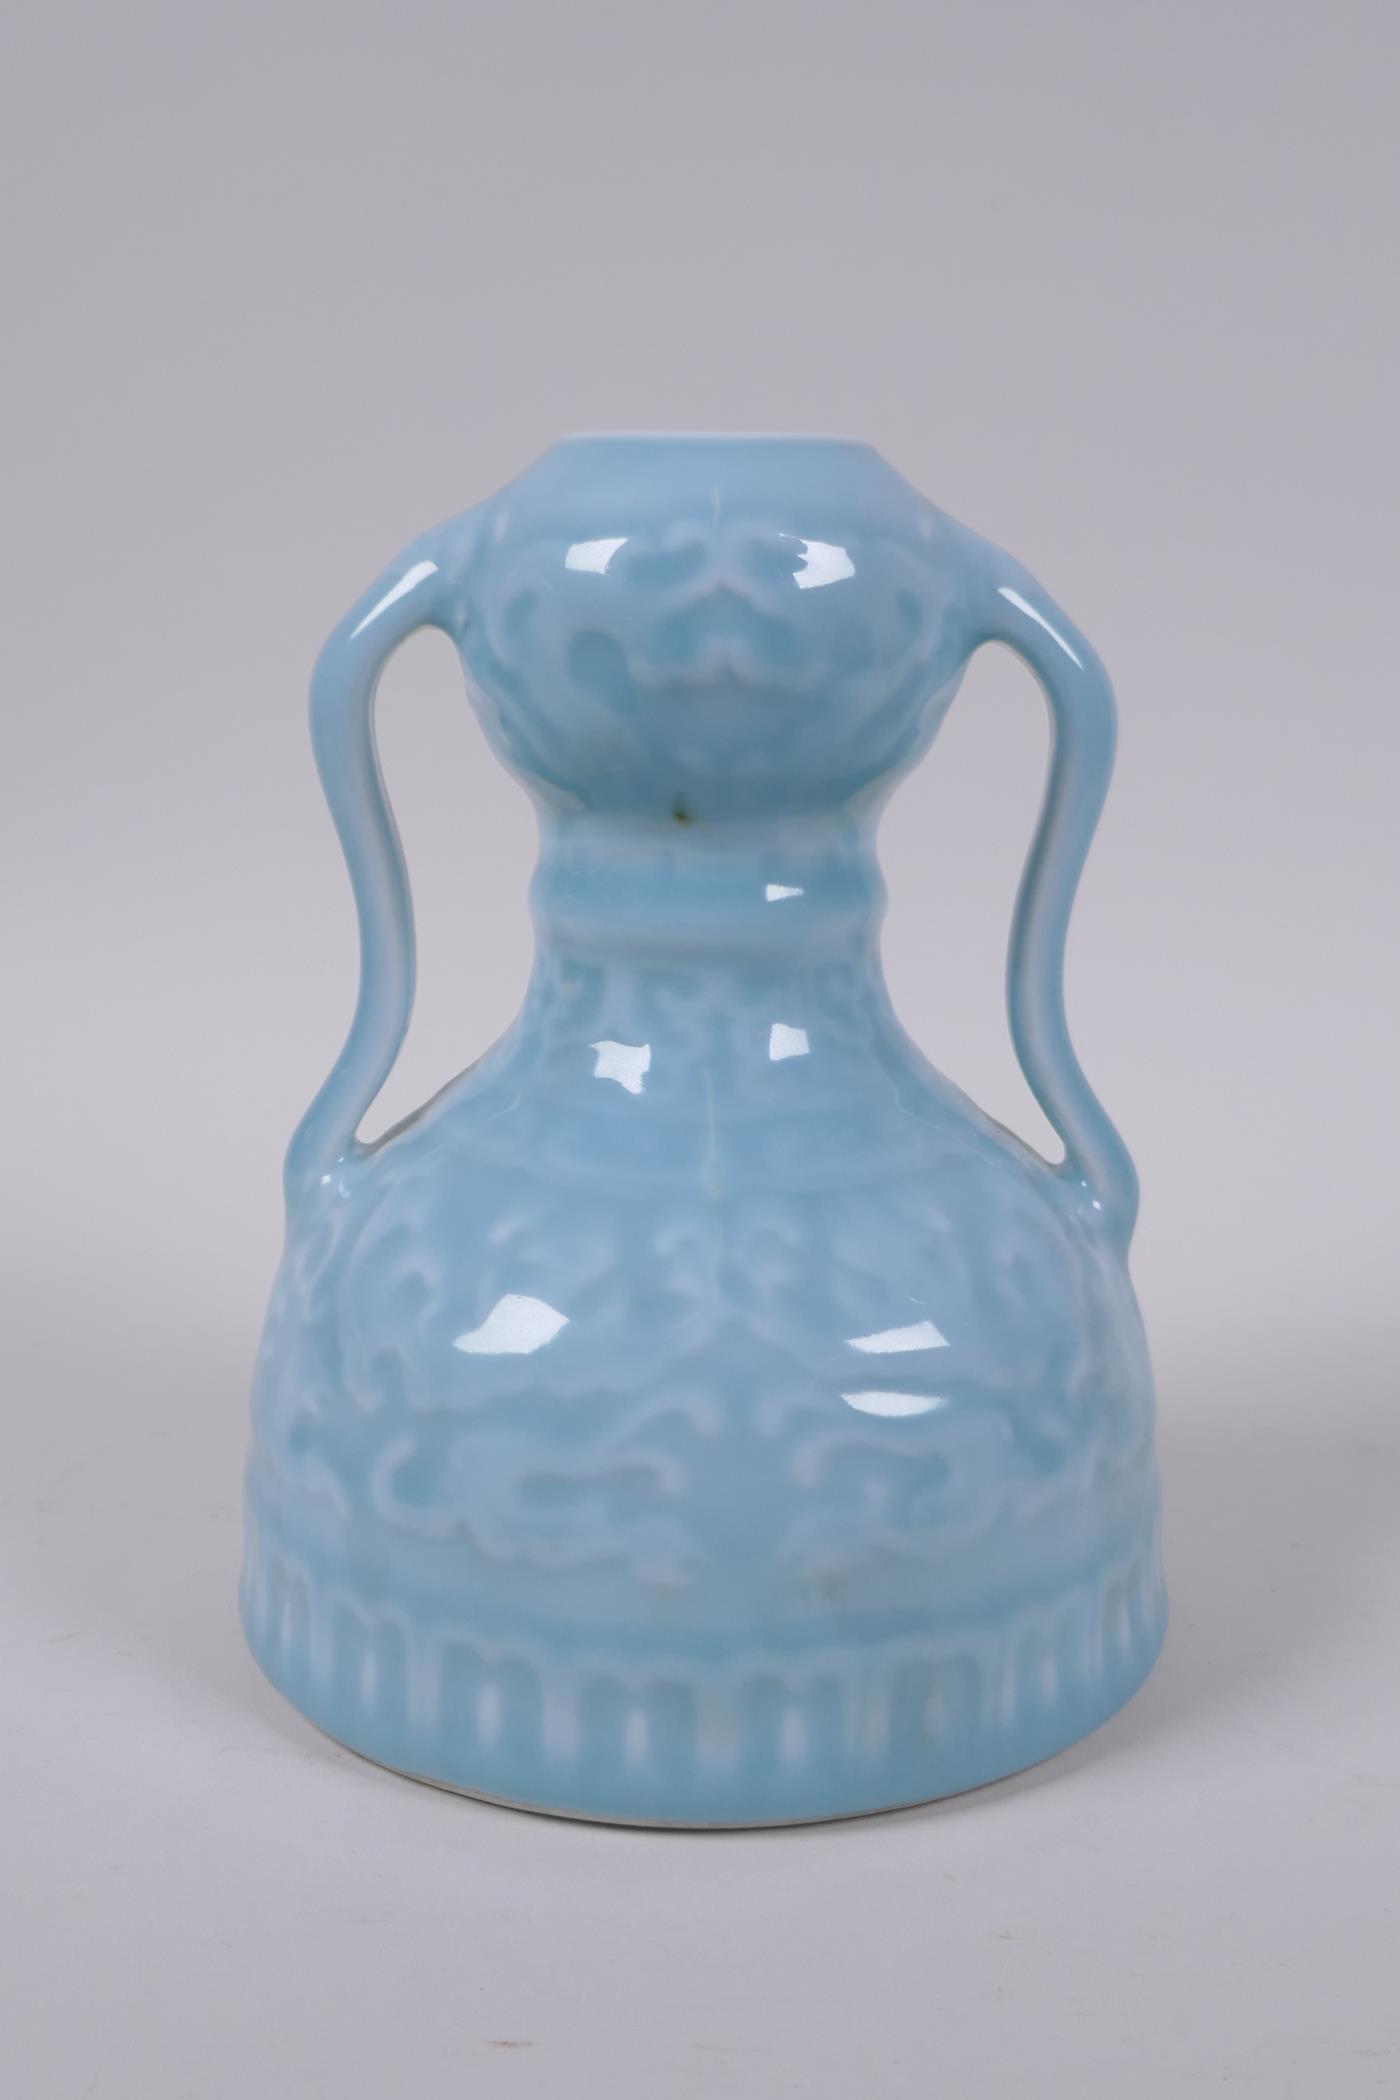 A celadon glazed porcelain two handled garlic head shaped vase with stylised under glaze dragon